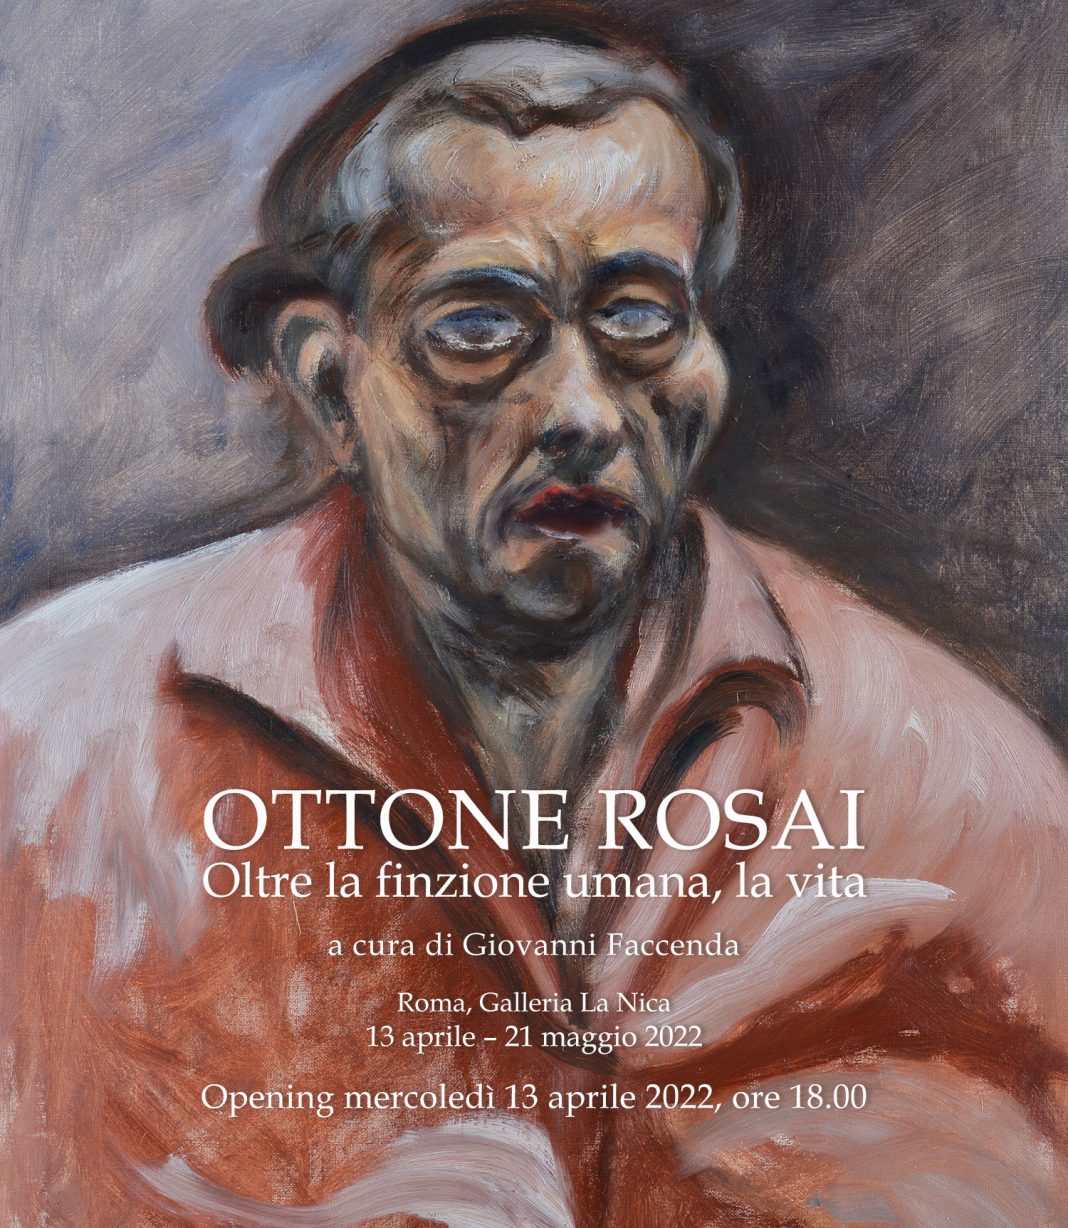 Ottone Rosai – Oltre la finzione umana, la vitahttps://www.exibart.com/repository/media/formidable/11/img/8a0/ROSAI_invito-piccolo-mailchimp-1068x1228.jpg